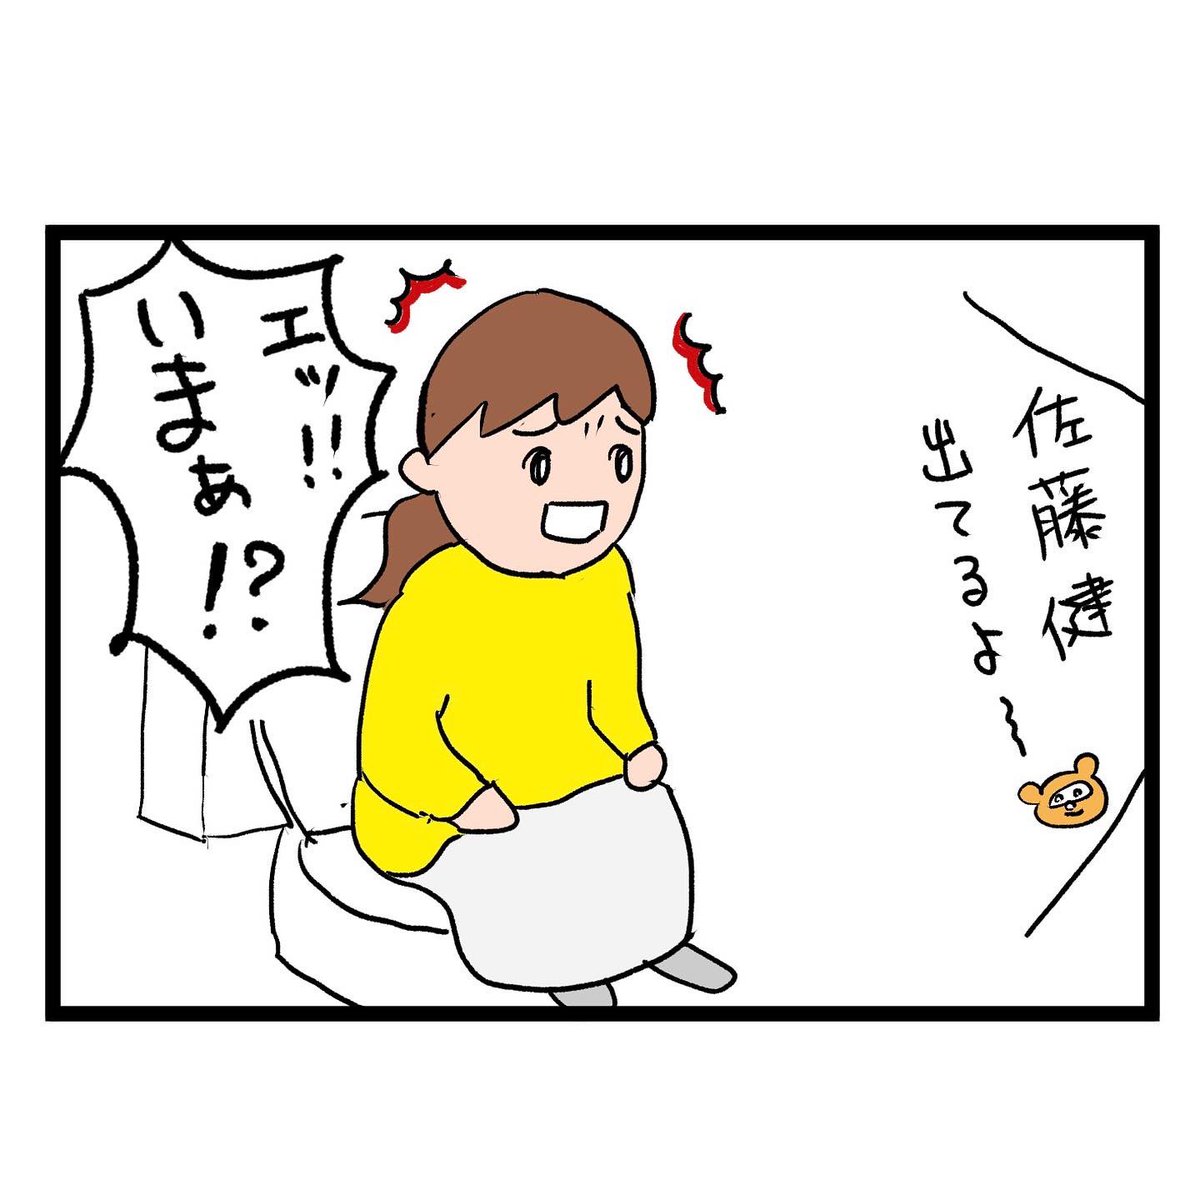 #四コマ漫画
#バラエティ番組
このあとっていつだーっ!! 